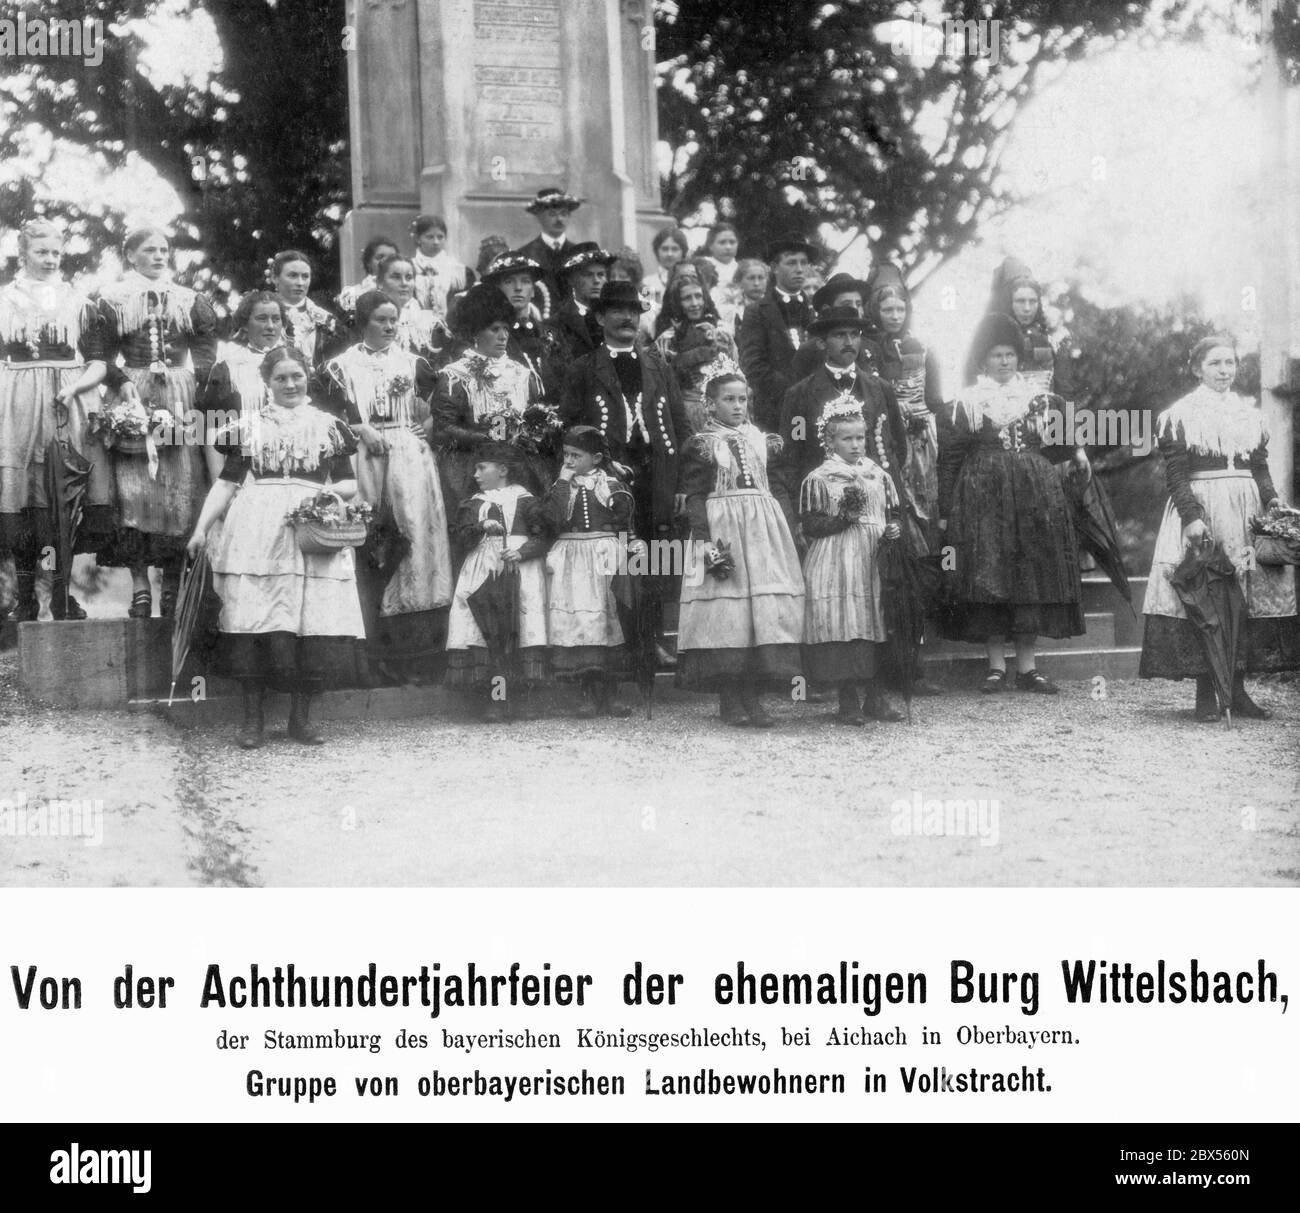 Eine Gruppe Oberbayern in Tracht vor der Ahnenburg der bayerischen Königsfamilie Wittelsbach bei Aichach in Oberbayern anlässlich des 800. Jahrestages der ehemaligen Wittelsbacher Burg. Stockfoto